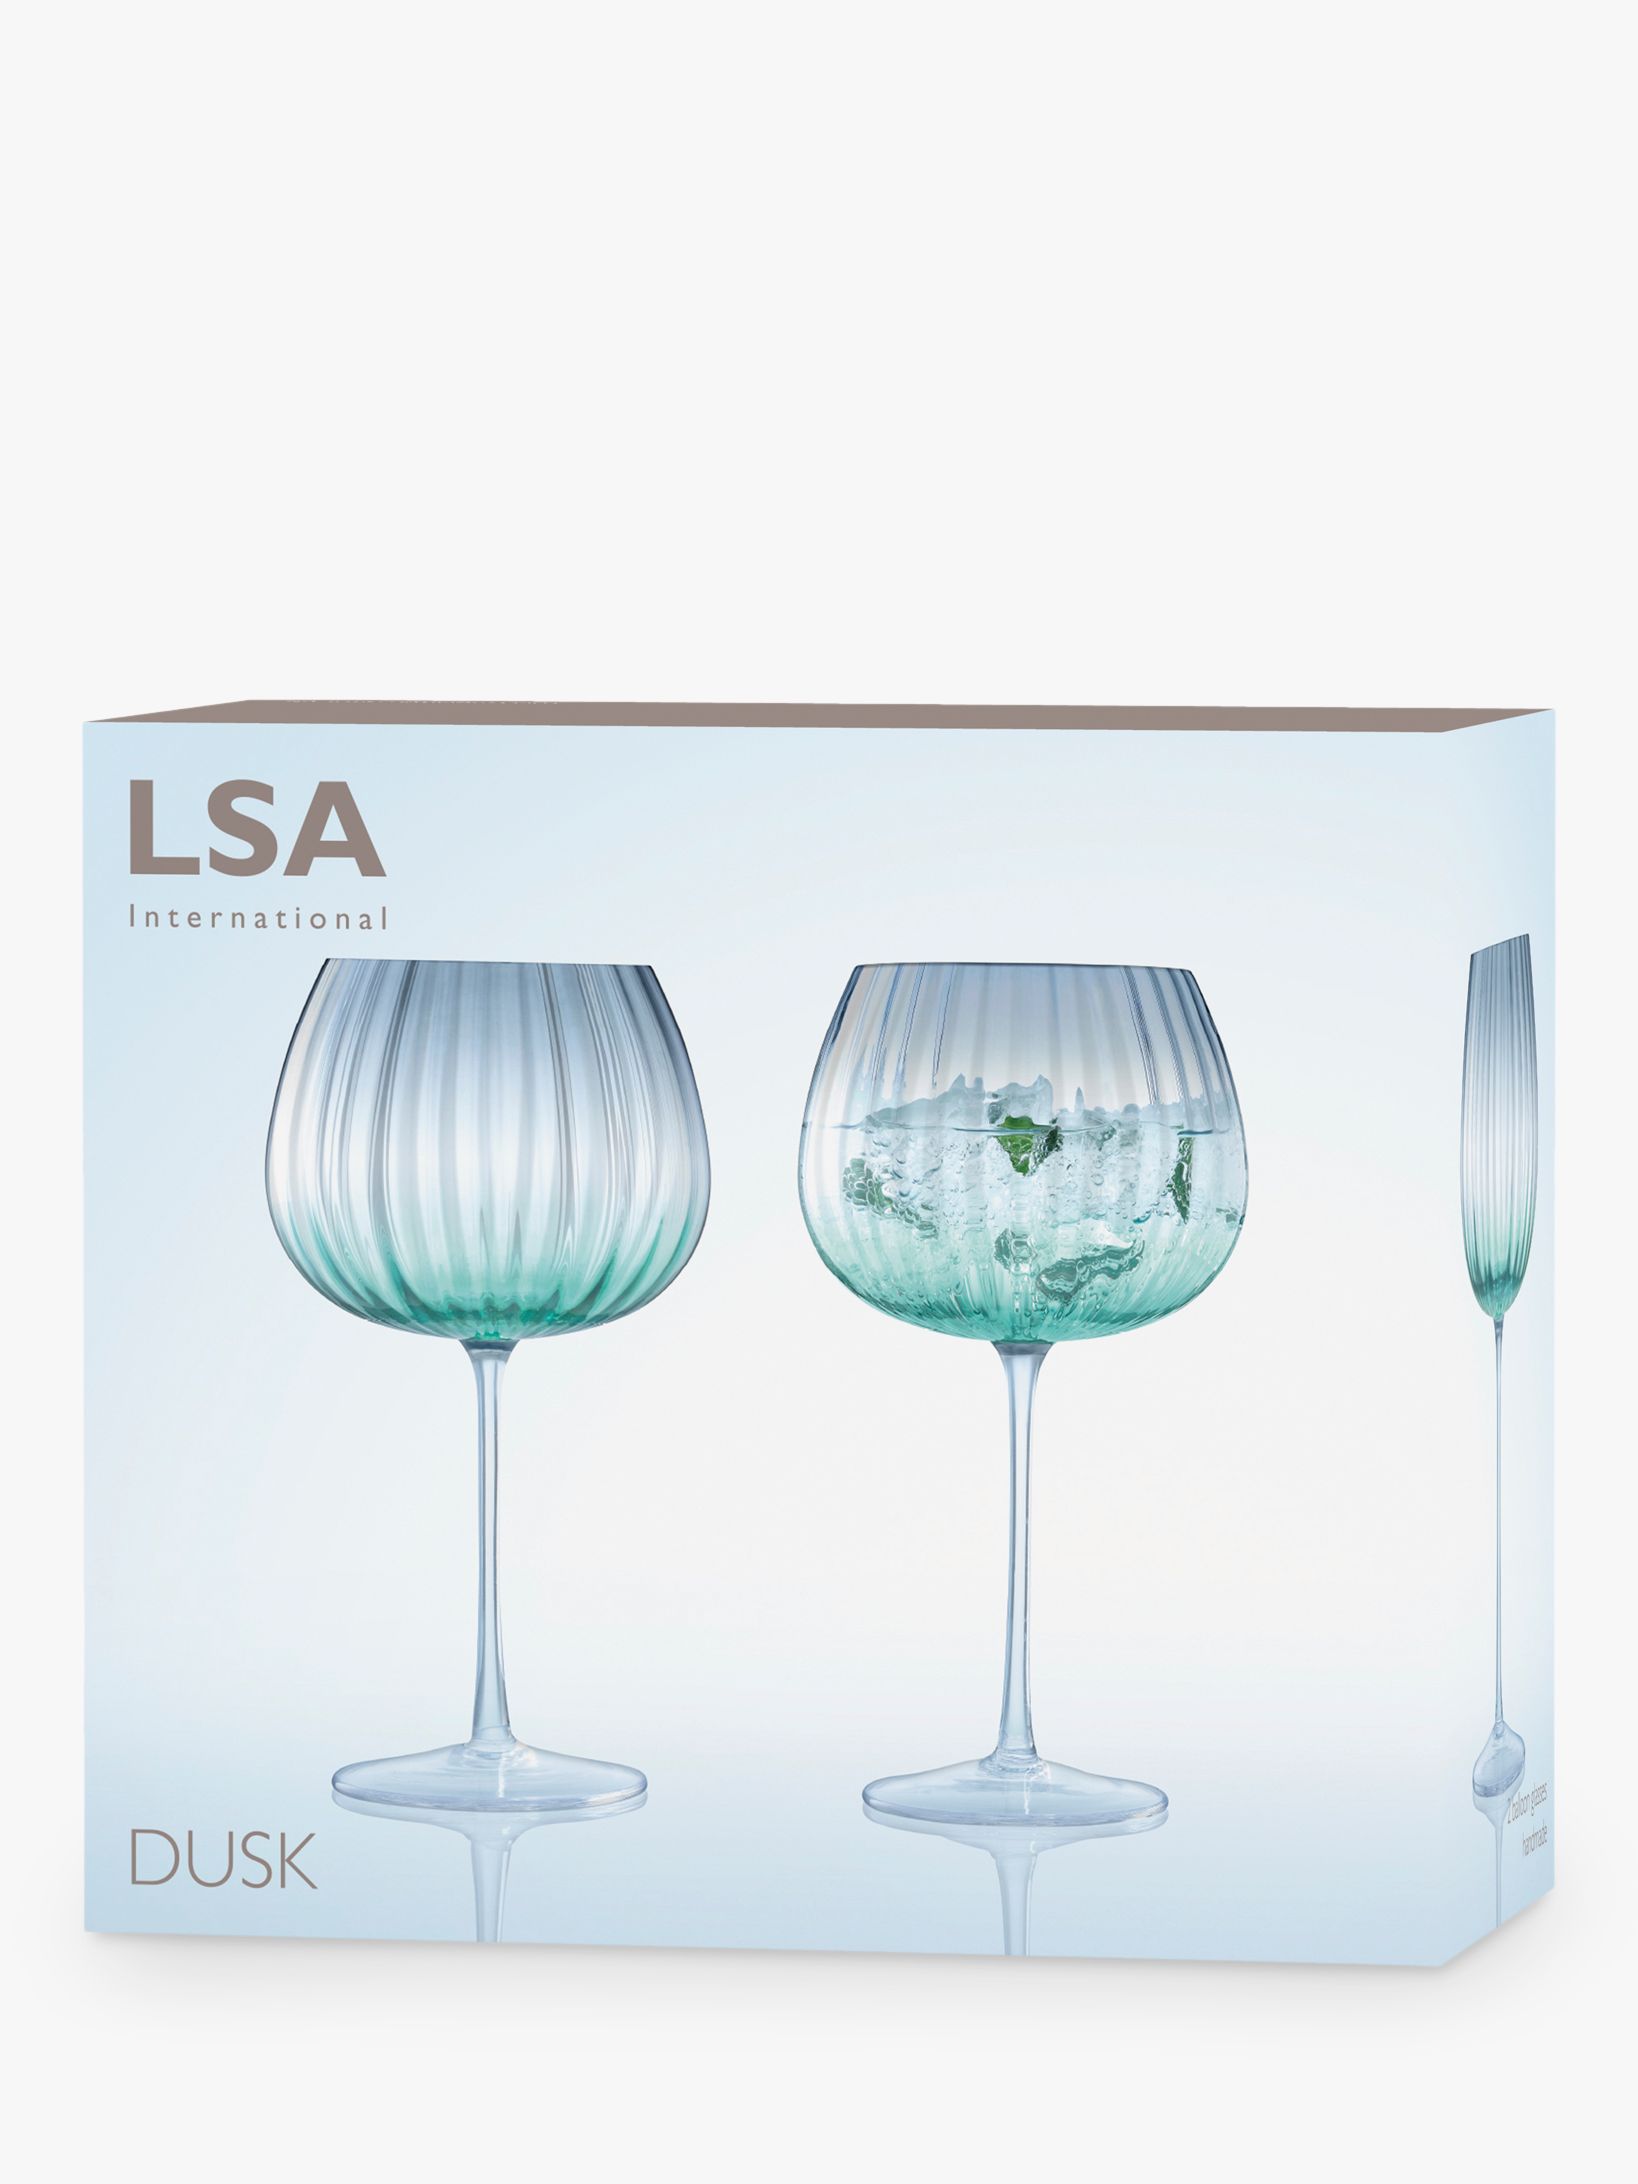 LSA International Dusk Balloon Goblet 650 ml Green/Grey, Set of 2, Mouthblown and Handmade Glass